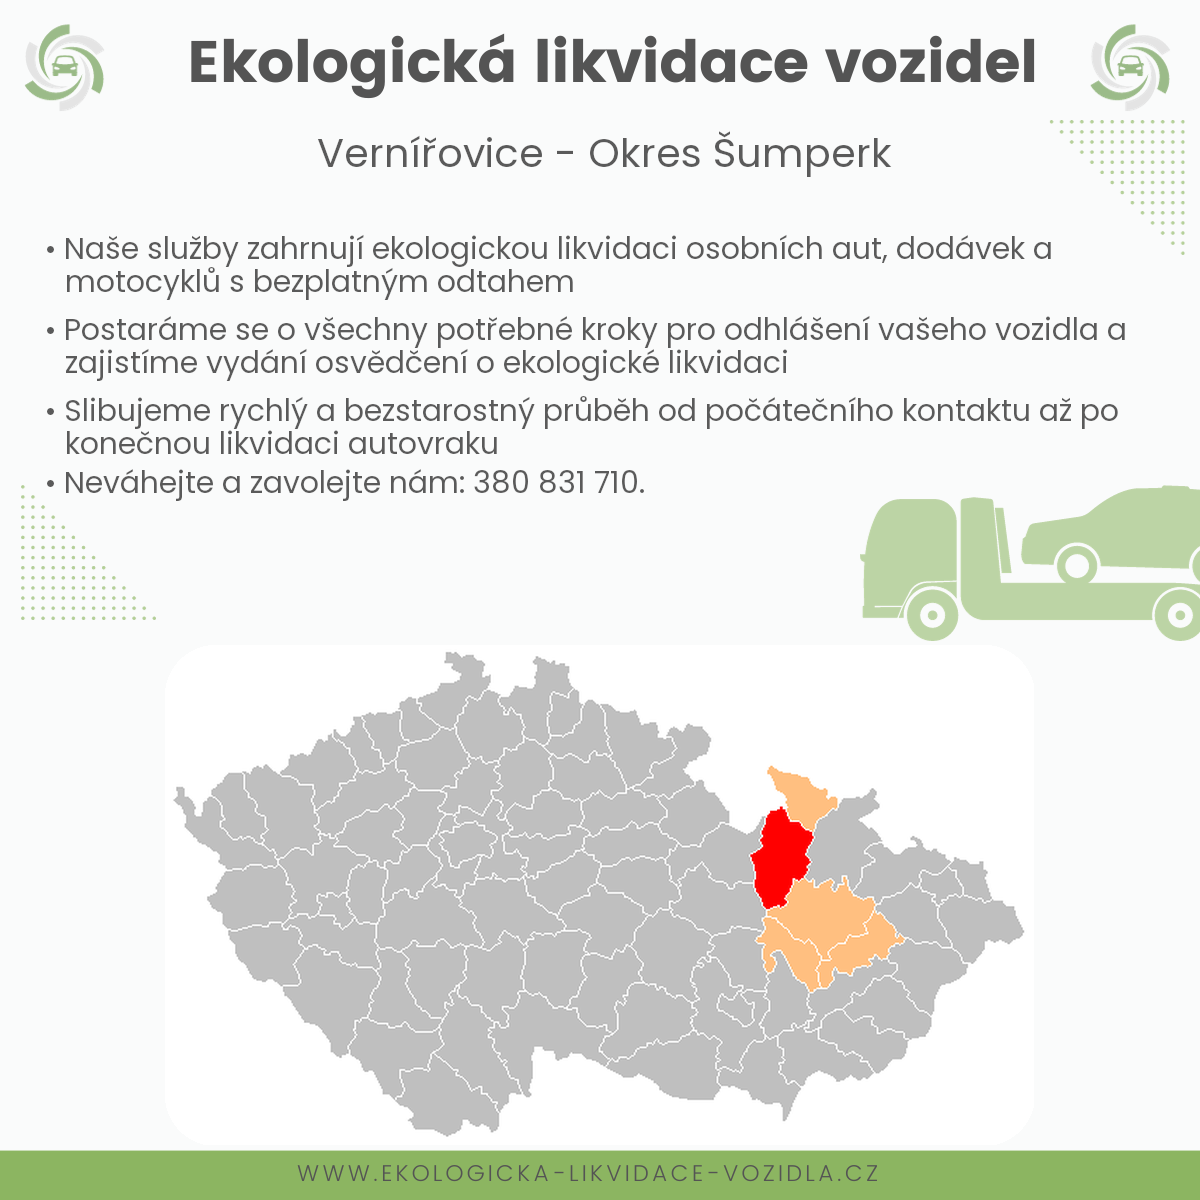 likvidace vozidel - Vernířovice